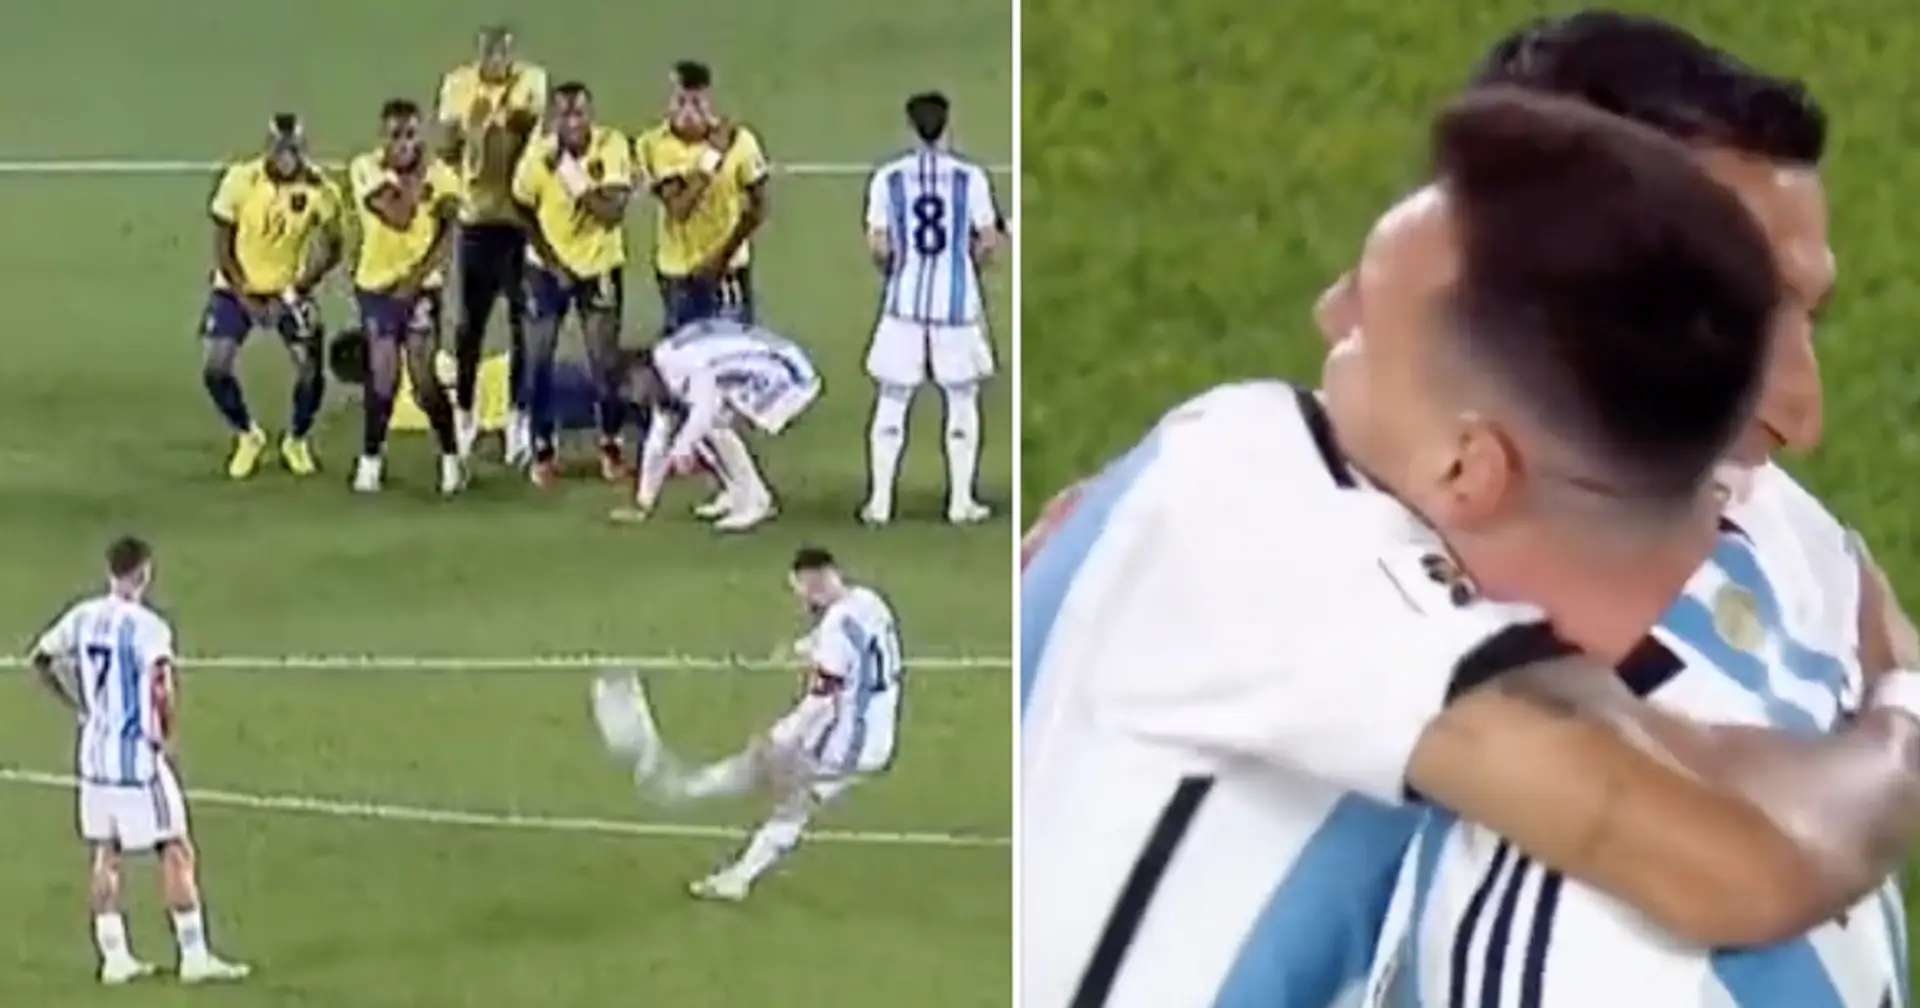 Leo Messi remporte à lui seul le match pour l'Argentine avec un but sur coup franc contre l'Équateur